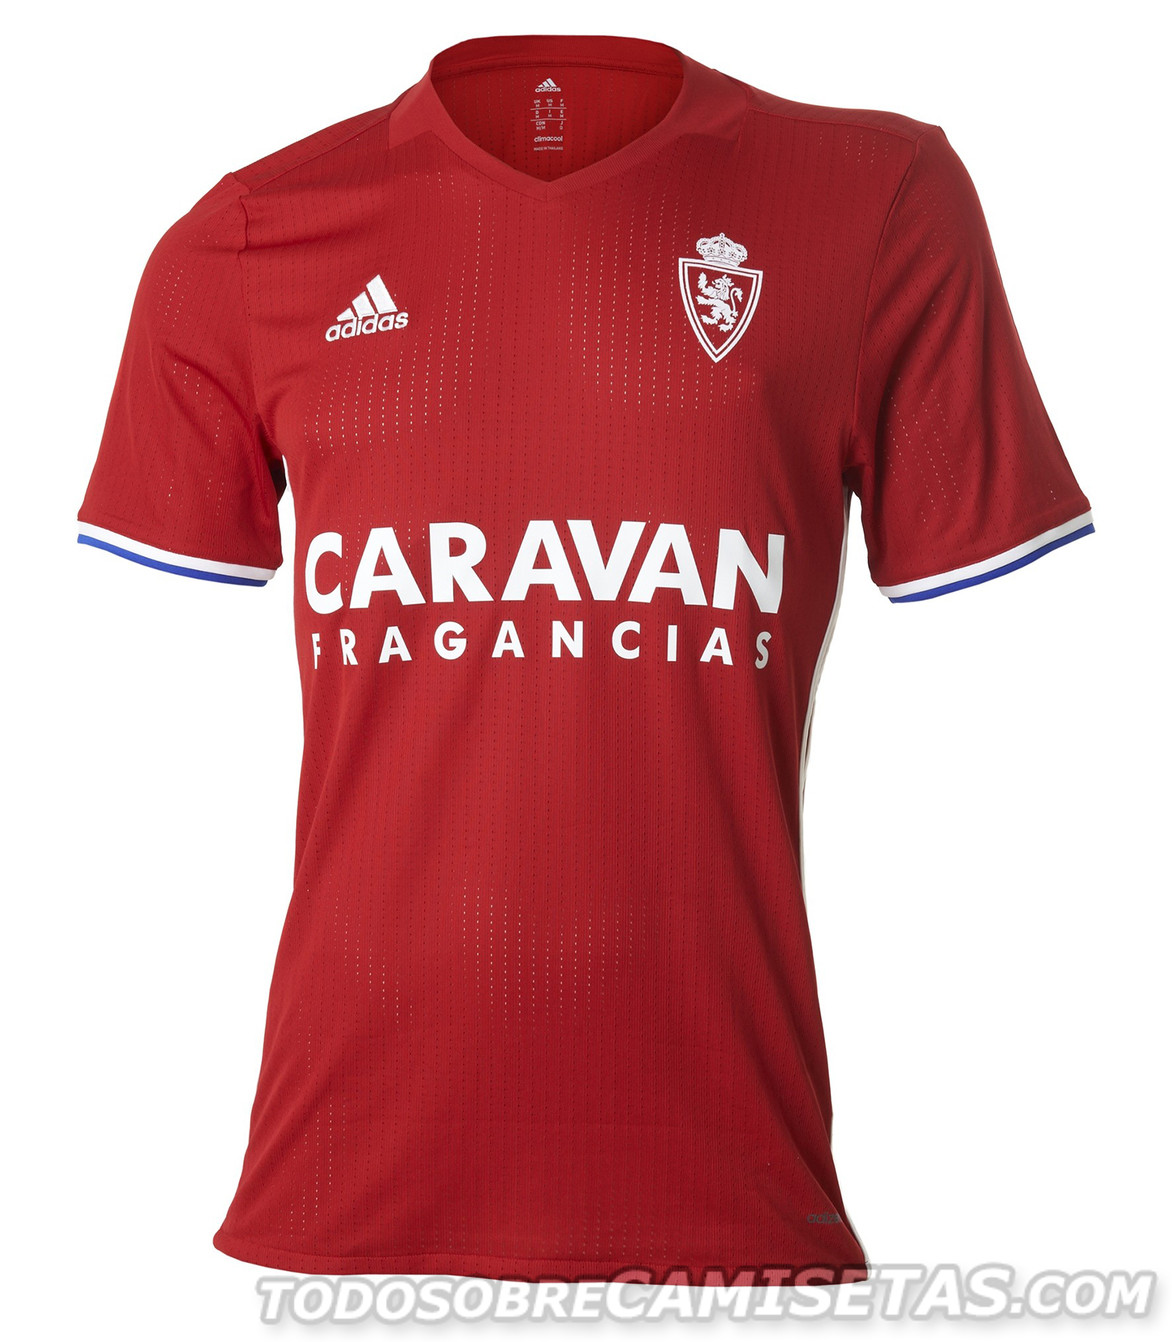 Tercera equipación adidas 2016-17 del Real Zaragoza